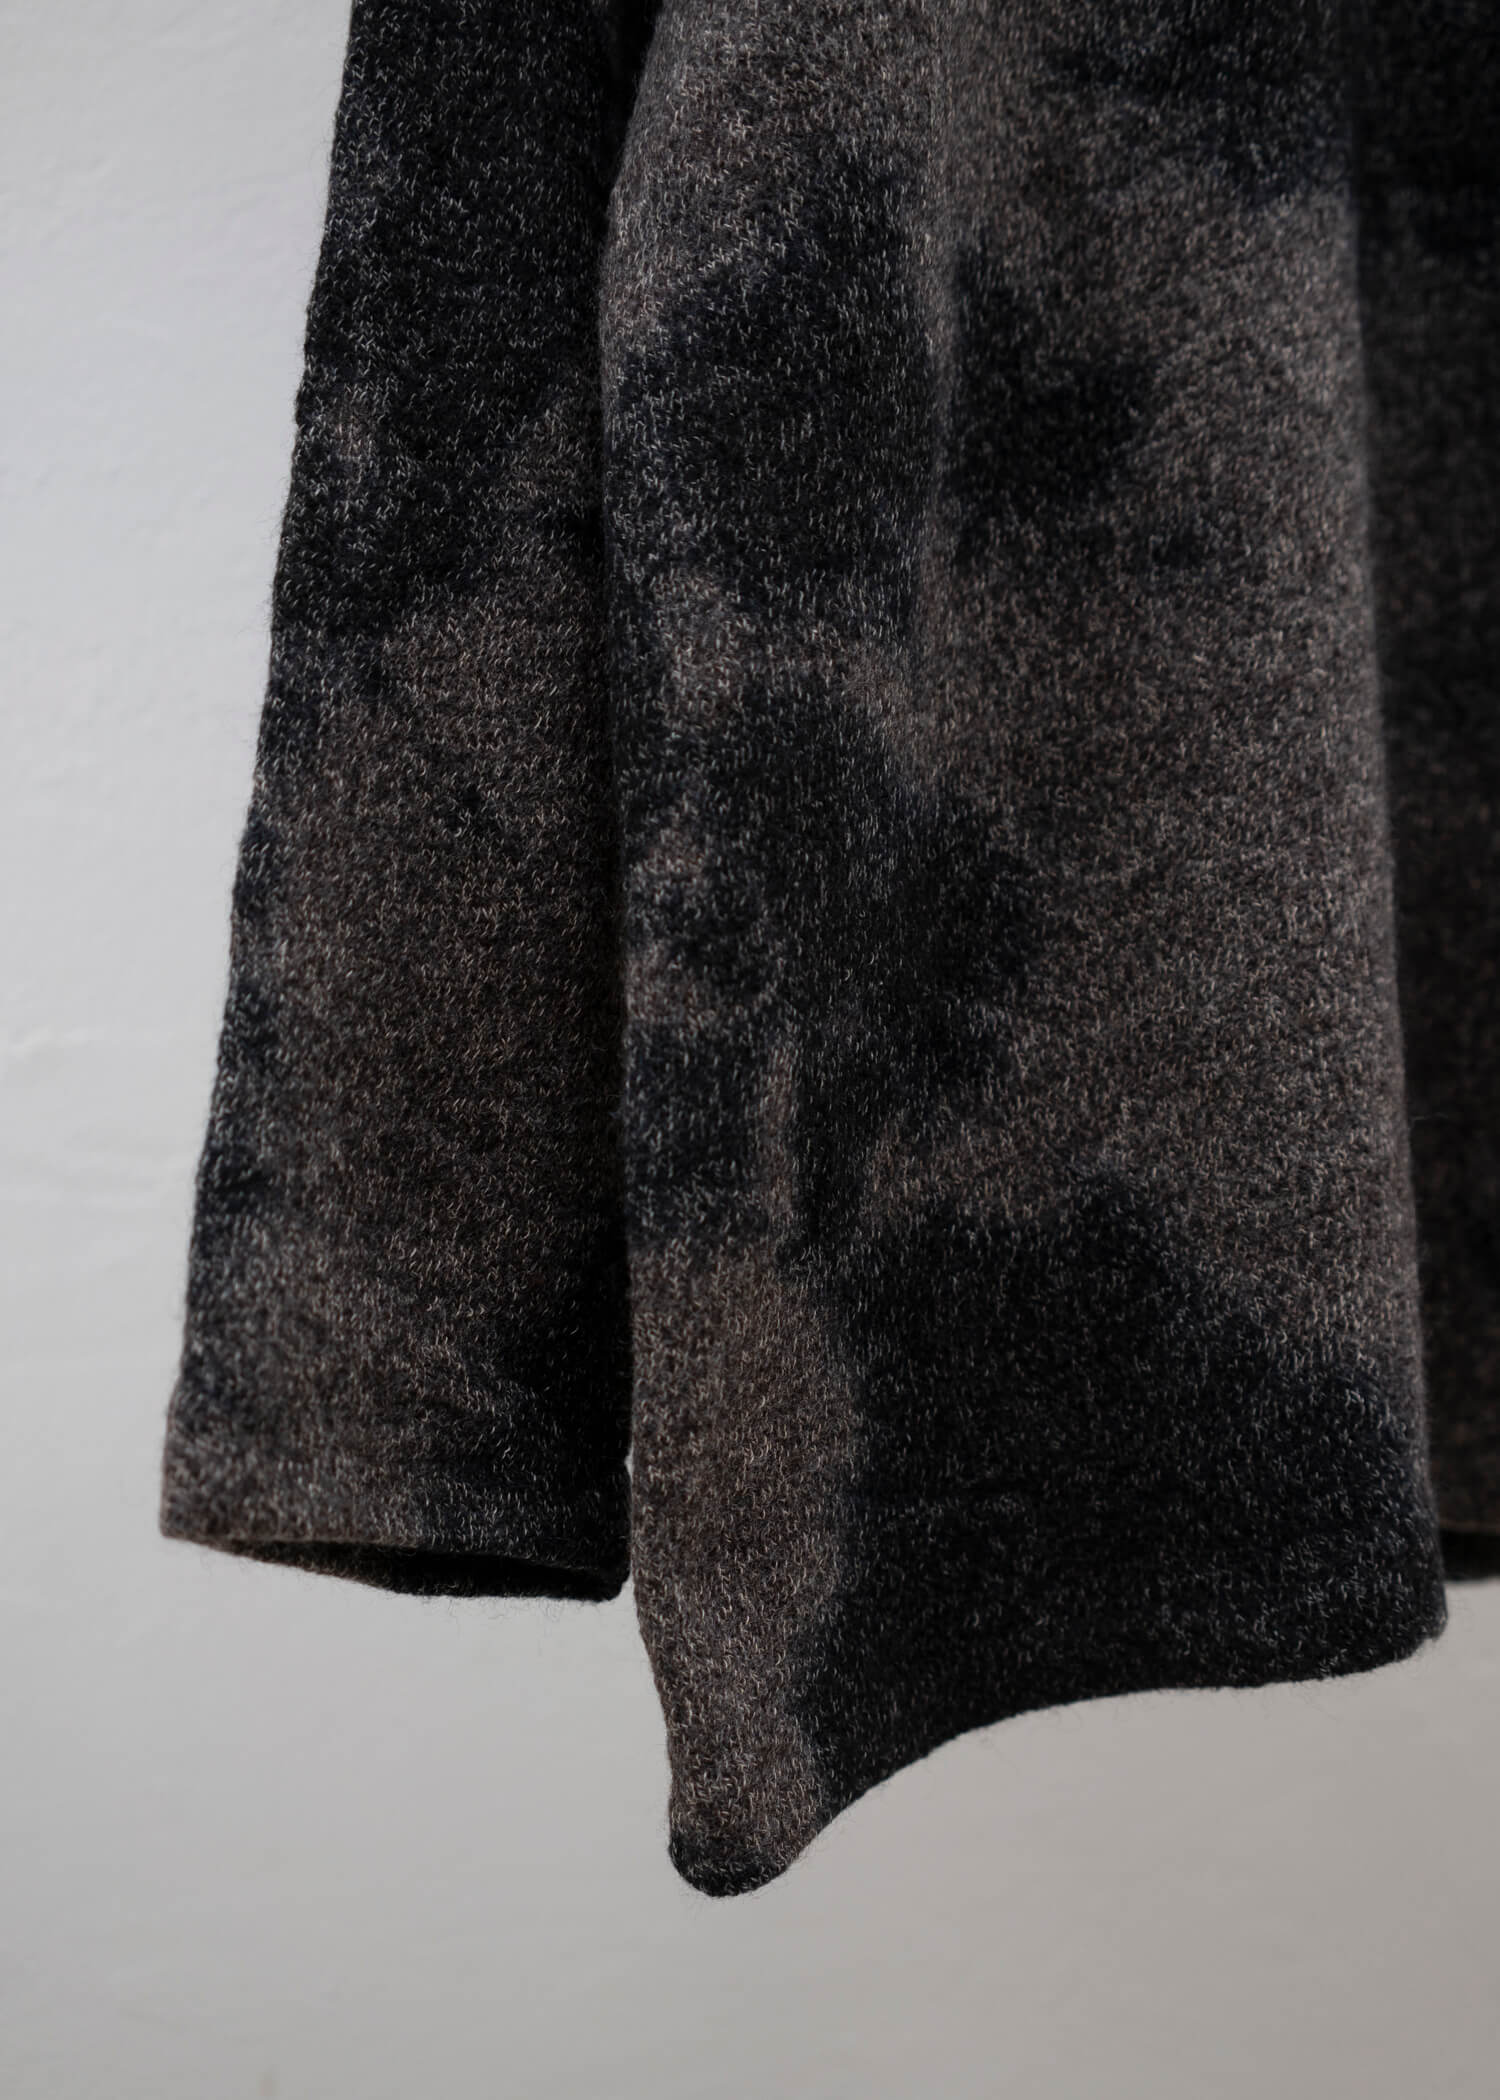 SUZUSAN Wool Cotton Jersey Crew Neck Pullover(Madara Shibori) Black - Muddy Br own